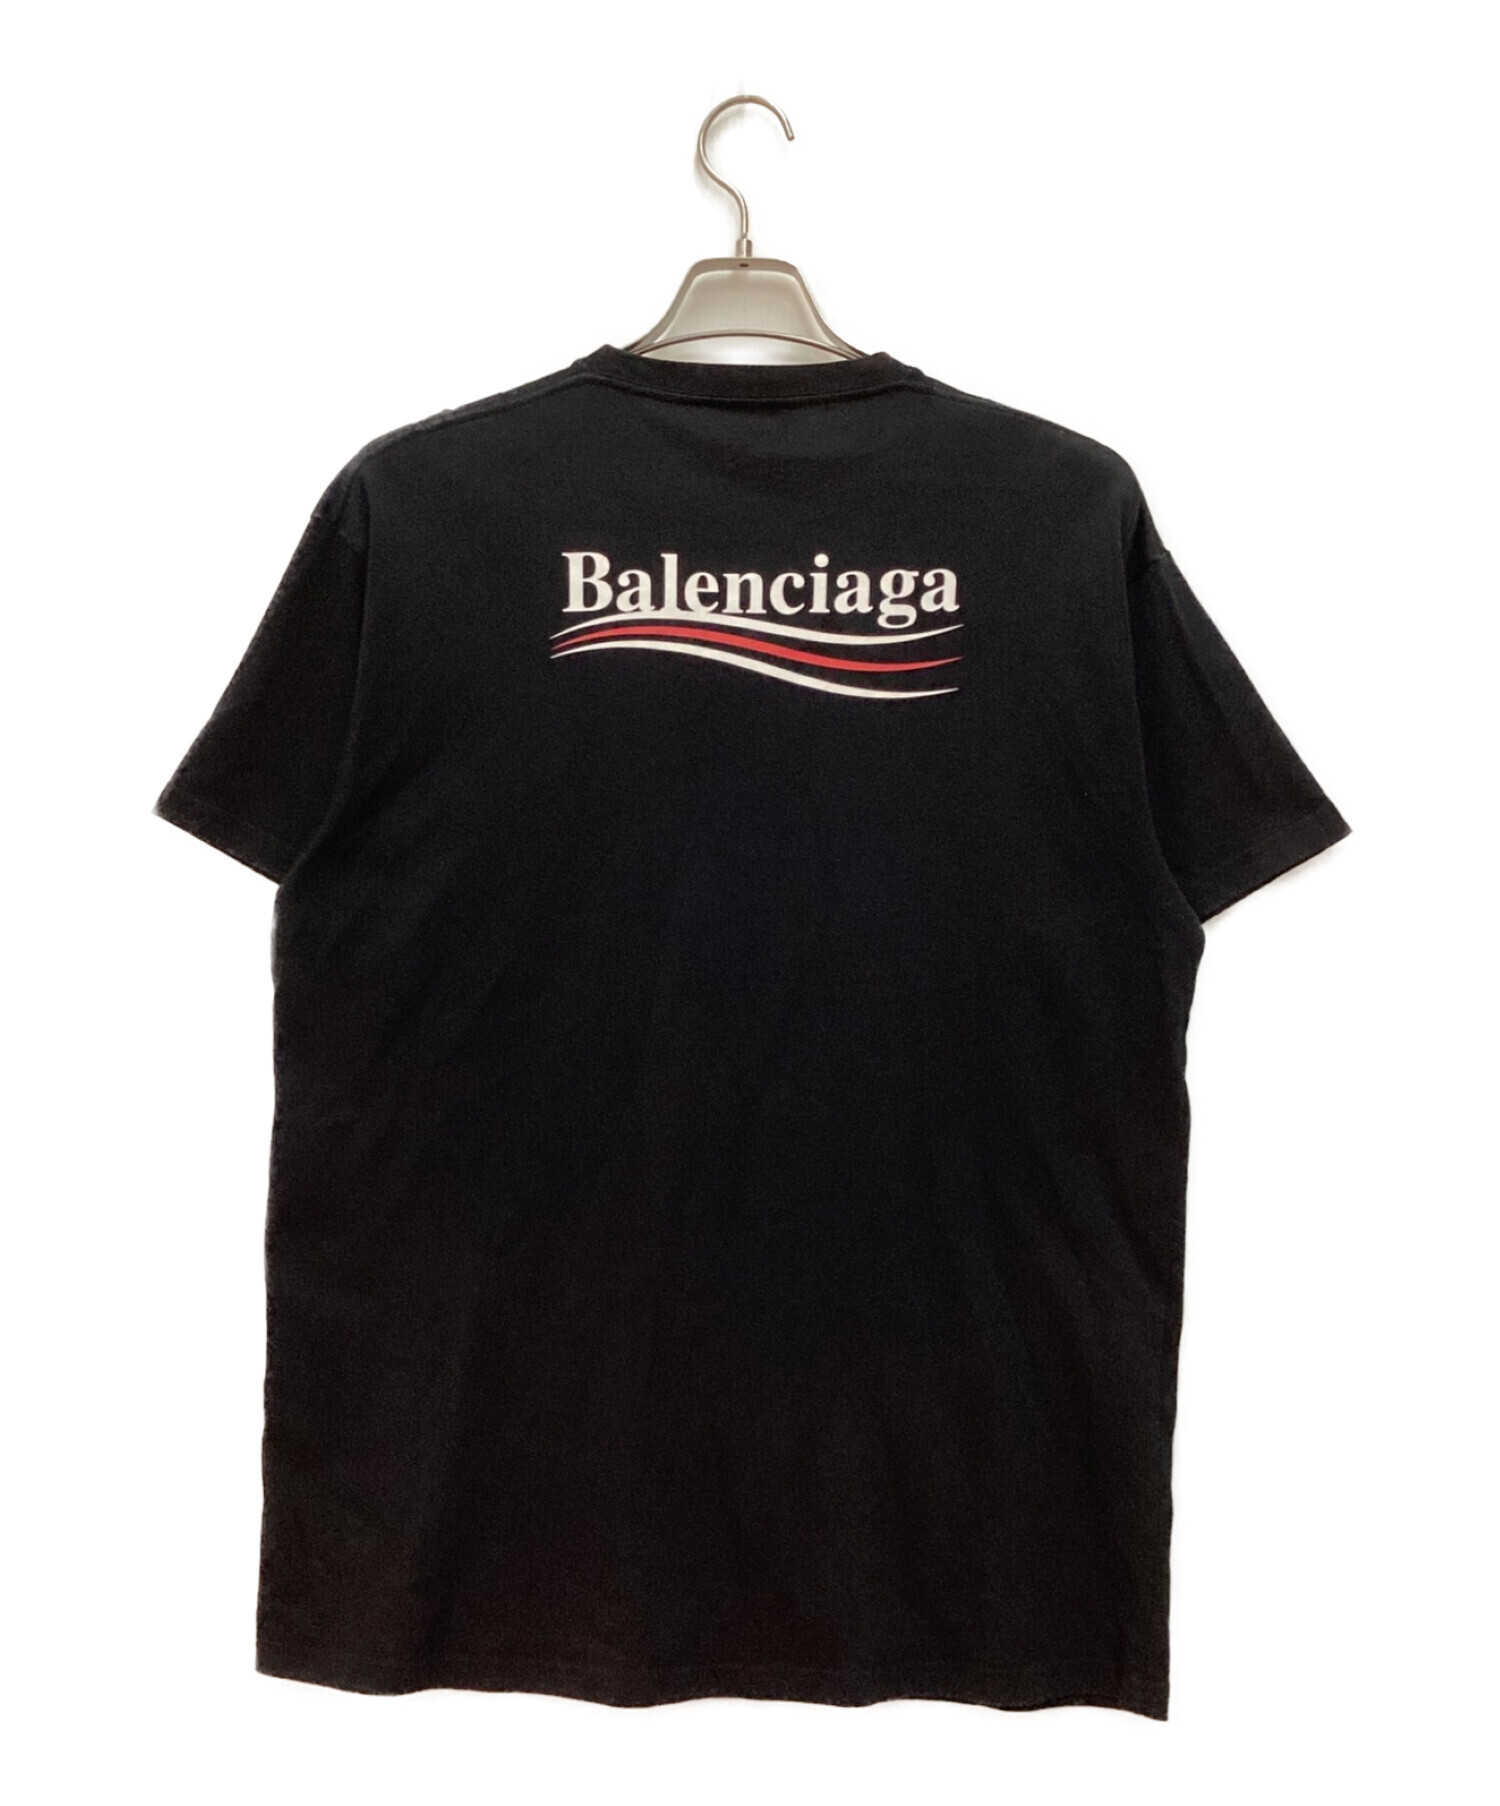 ブランド公式通販 BALENCIAGA キャンペーンロゴ Tシャツ ブラック ...